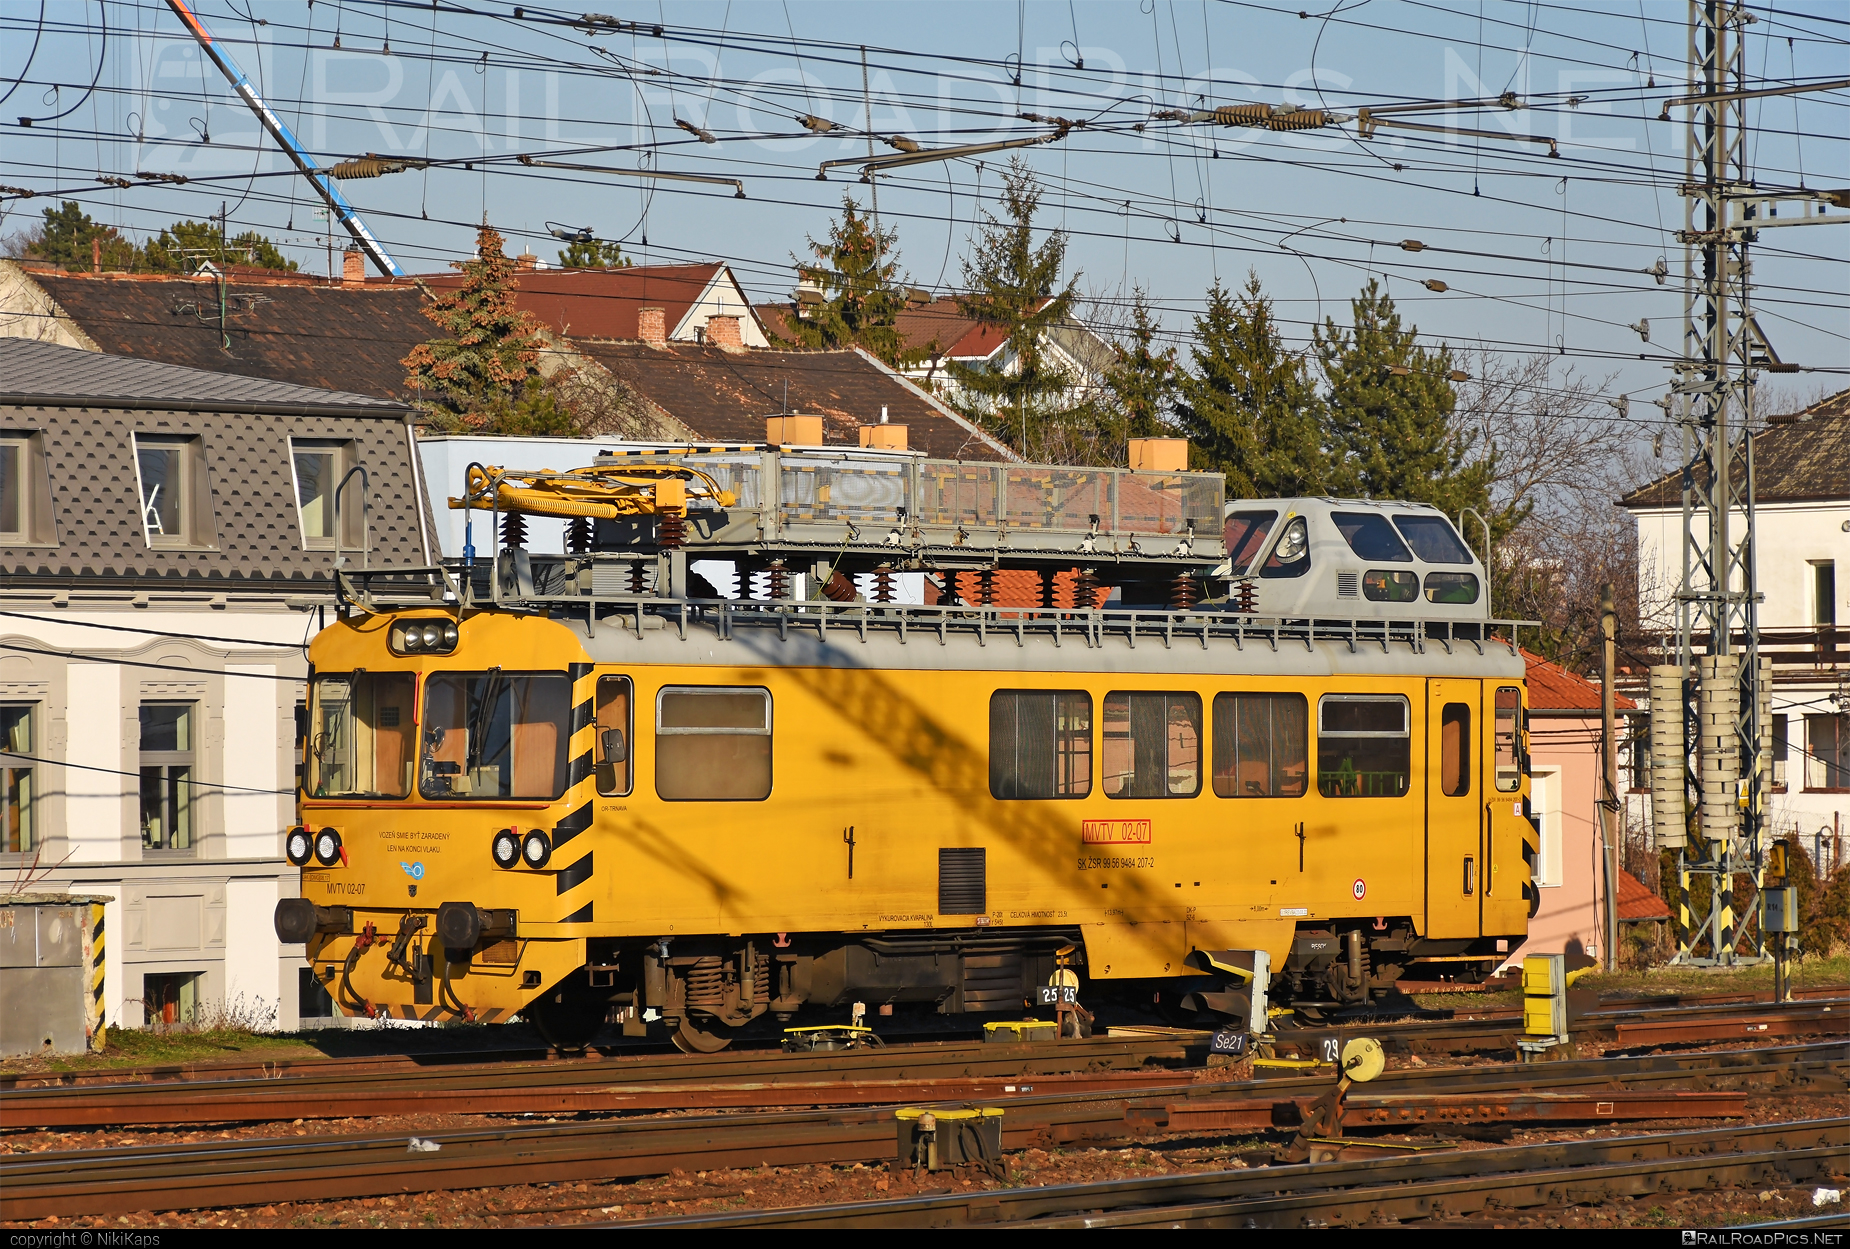 Vagónka Studénka MVTV 02 - MVTV 02-07 operated by Železnice Slovenskej Republiky #locomotivemvtv #mvtv02 #mvtv2 #vagonkaStudenka #zelezniceslovenskejrepubliky #zsr